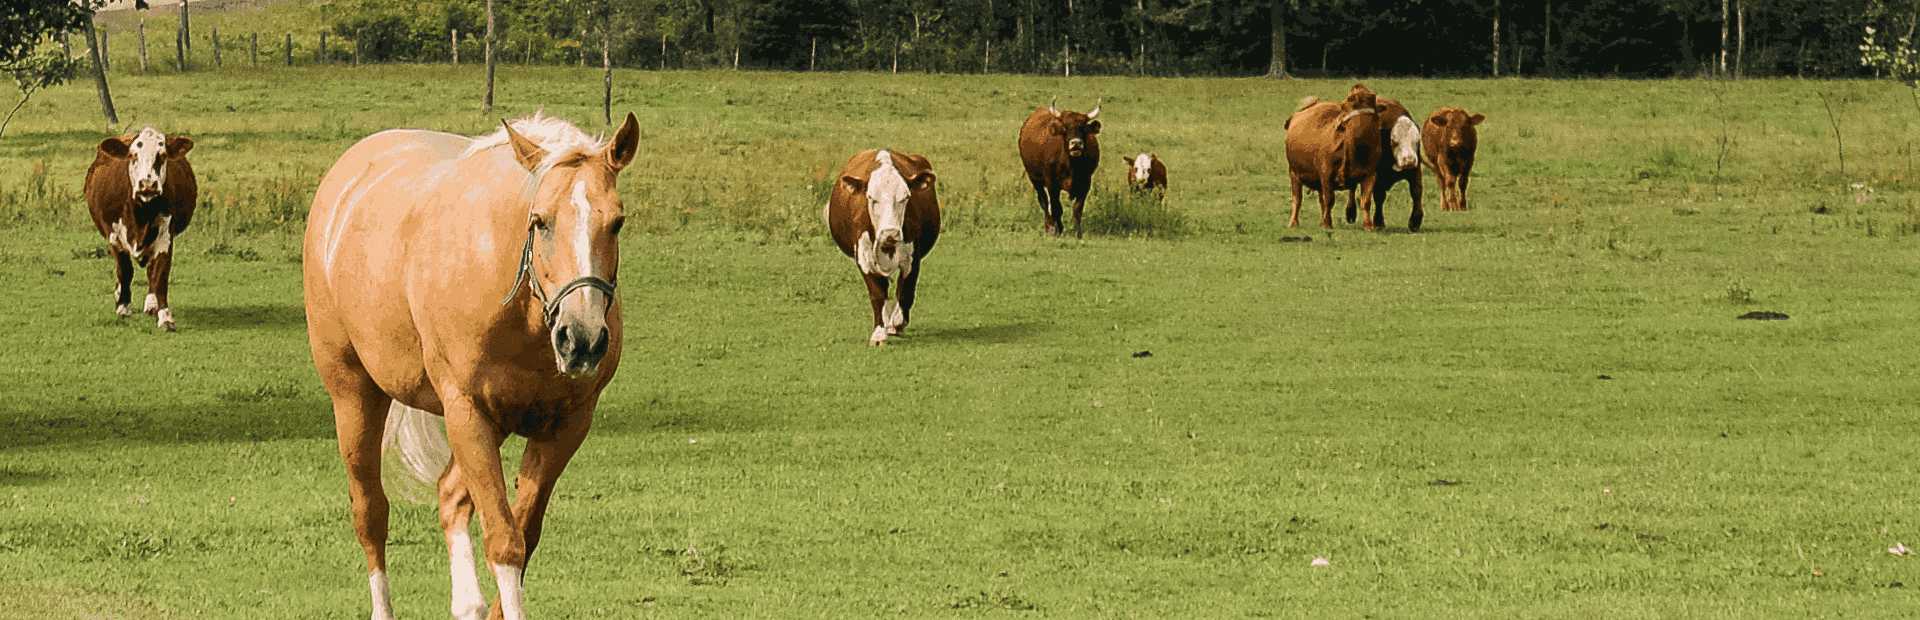 Slajd 3 - Koń wśród krów